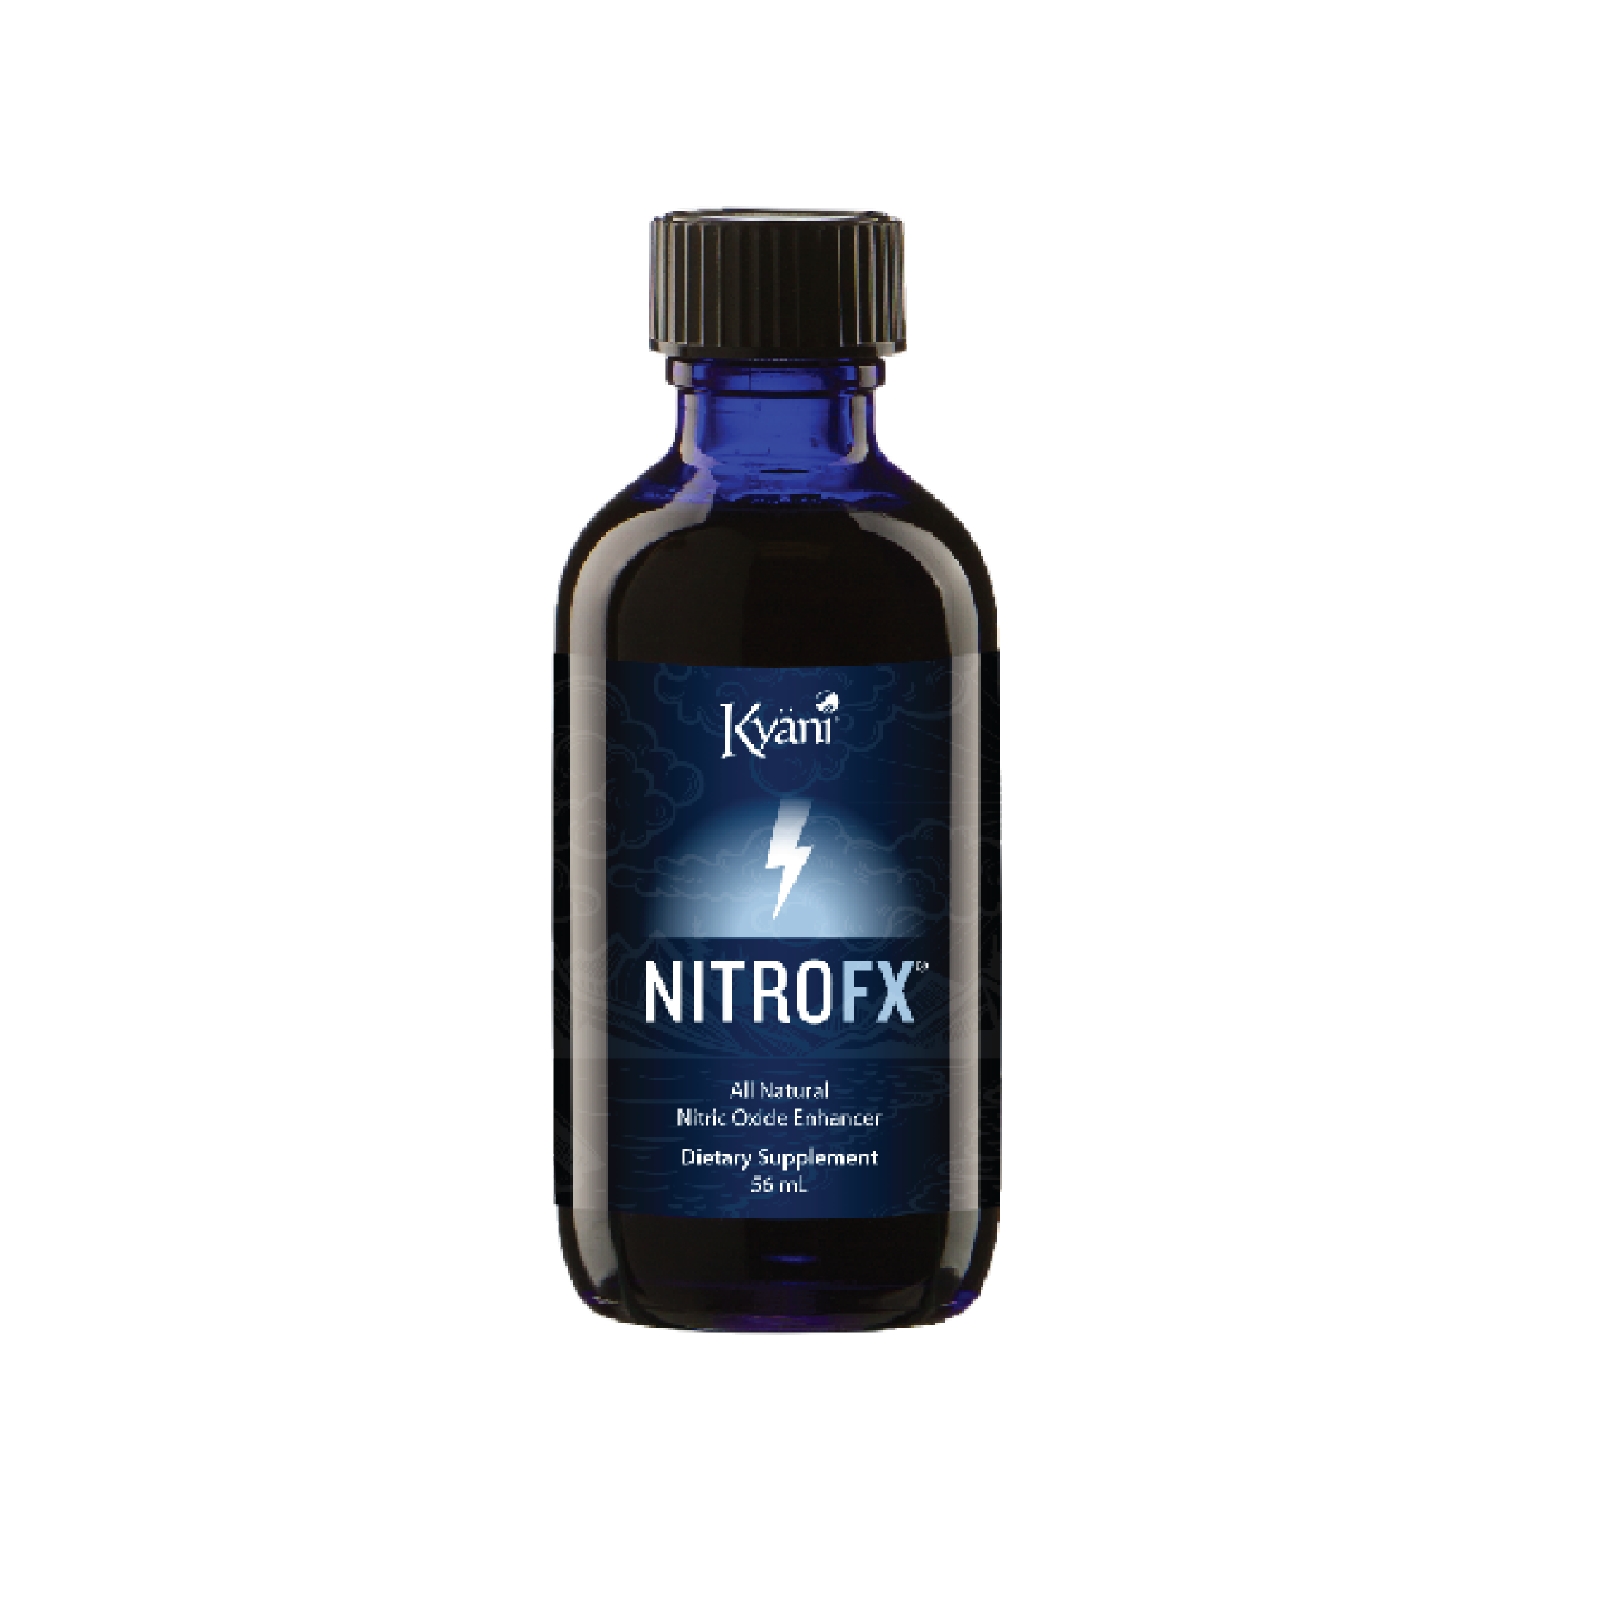 Nitro FX Nitric Oxide Enhancer